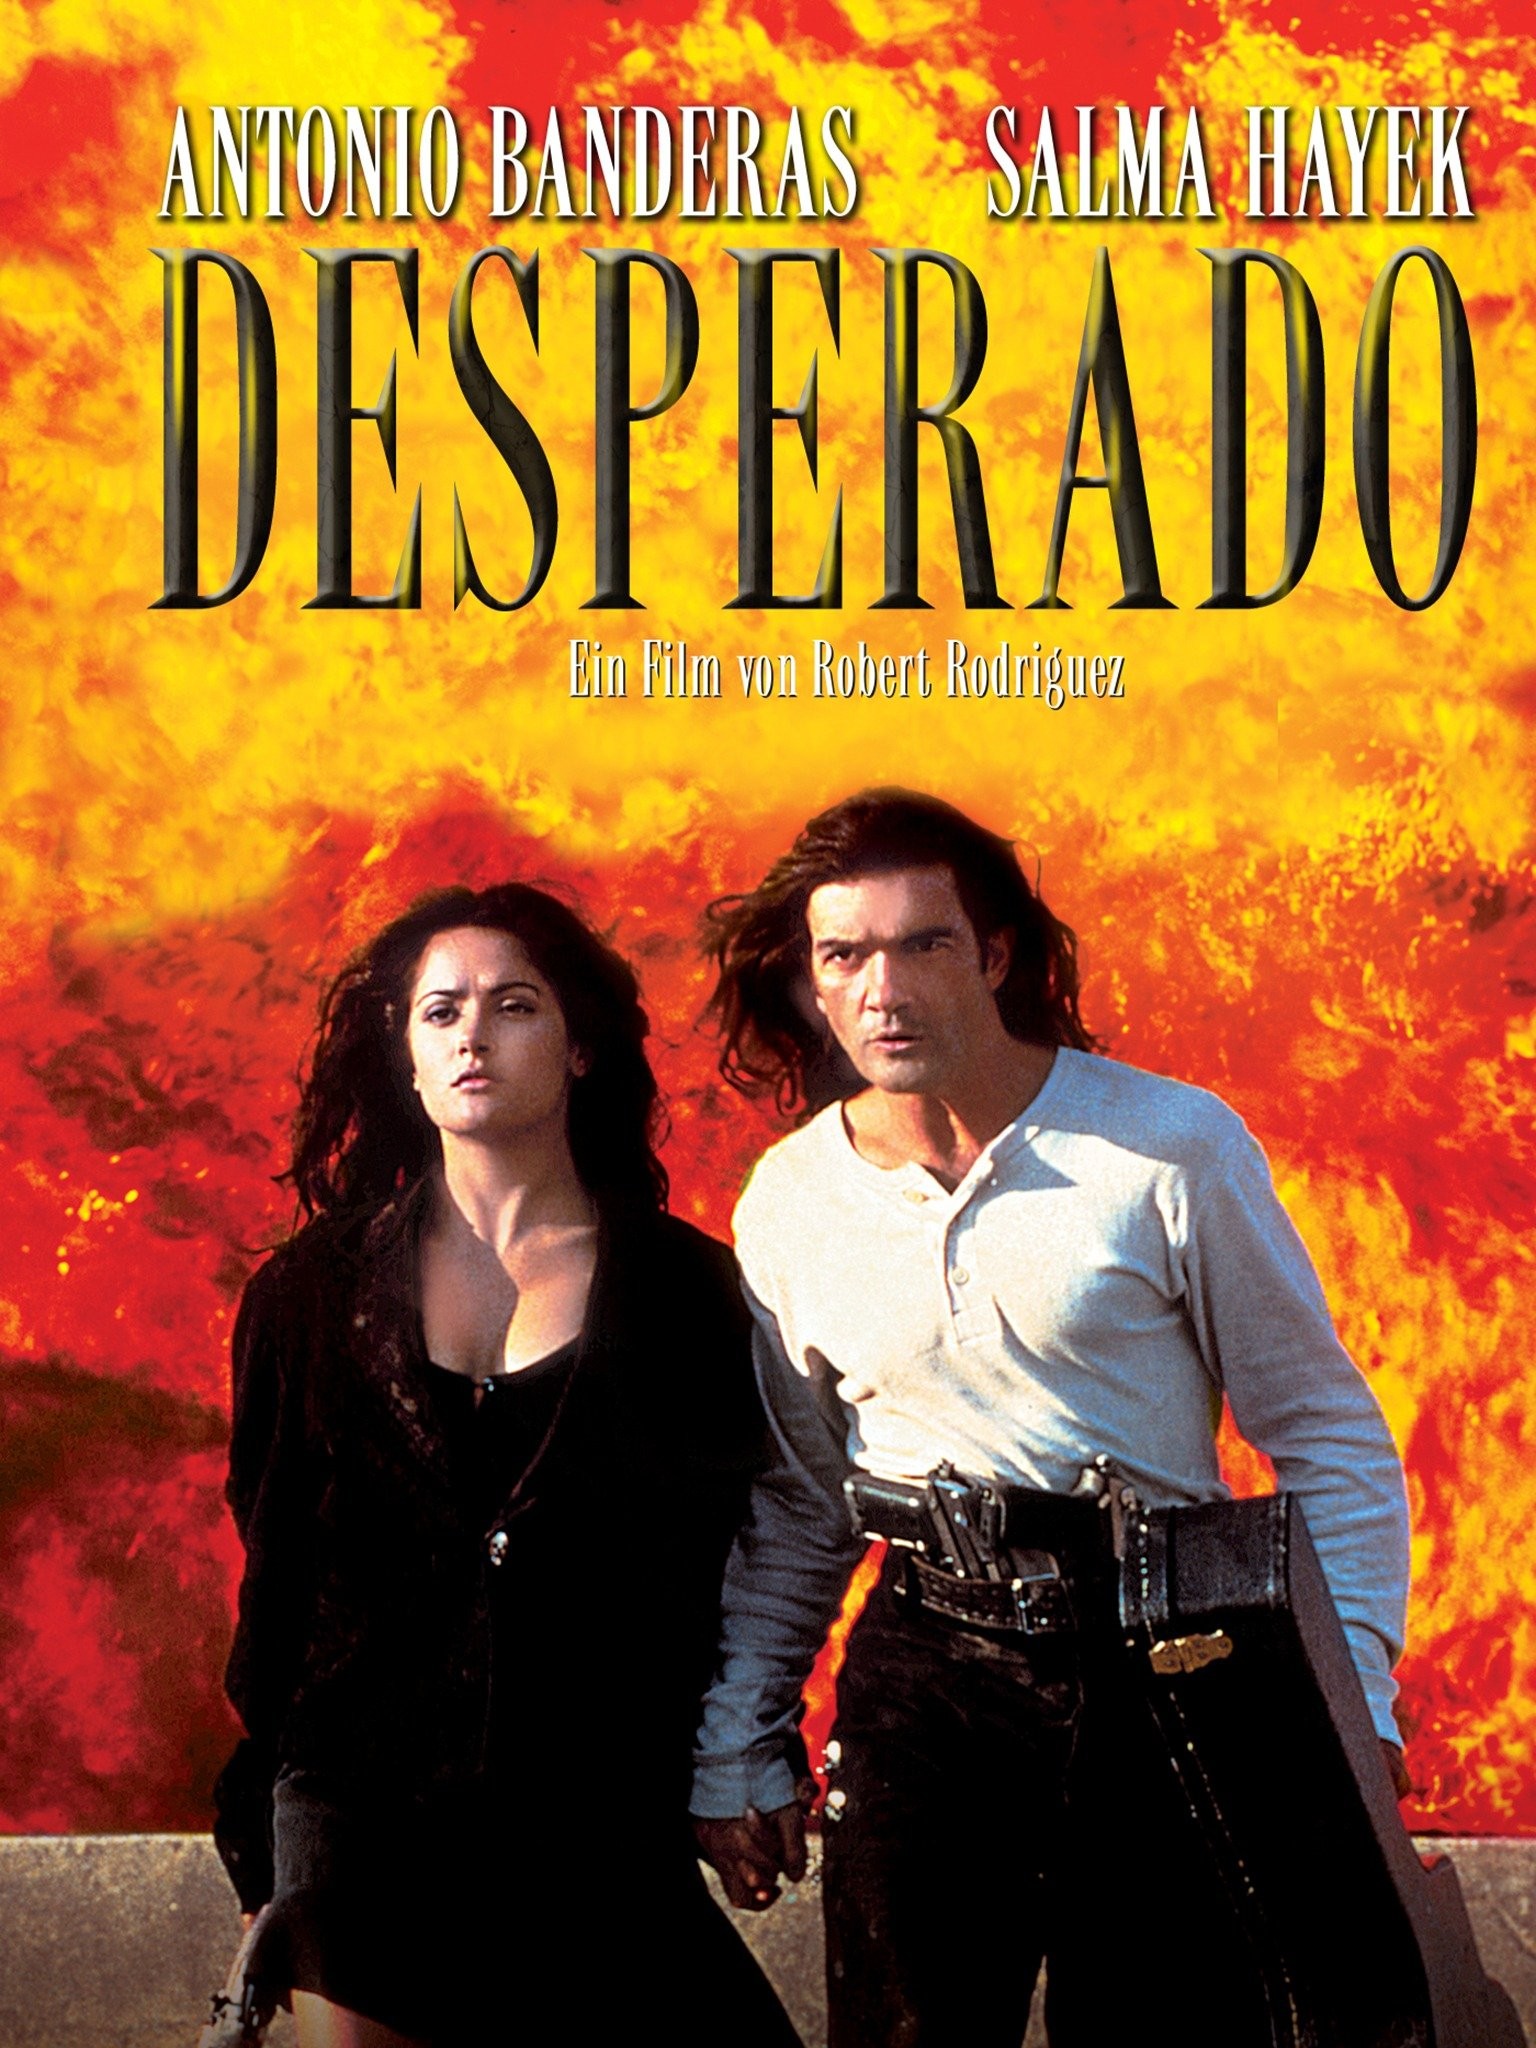 Antonio Banderas and Salma Hayek on the set of Desperado